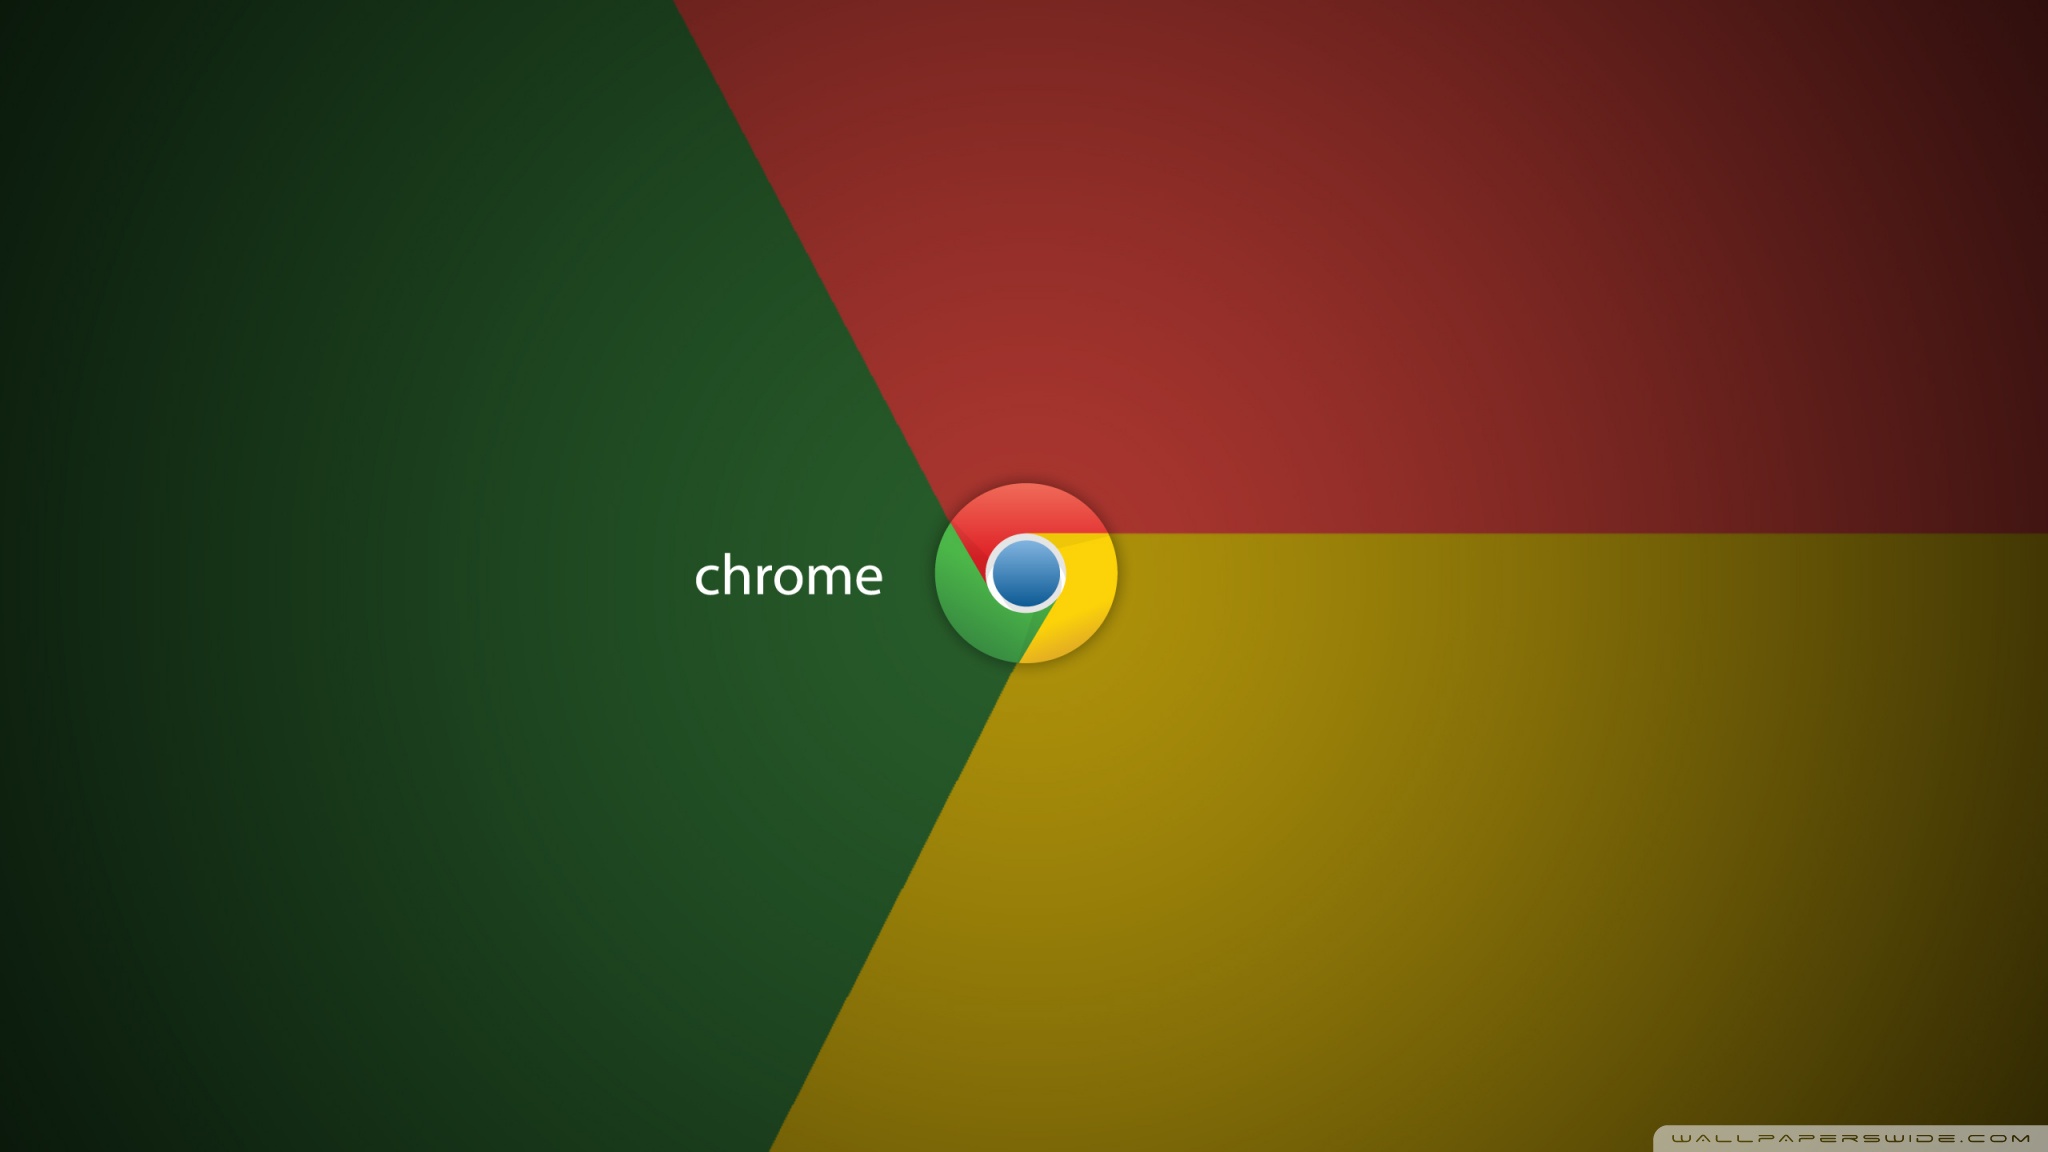 Chrome Logo Ultra HD Desktop Background Wallpaper For 4k UHD Tv